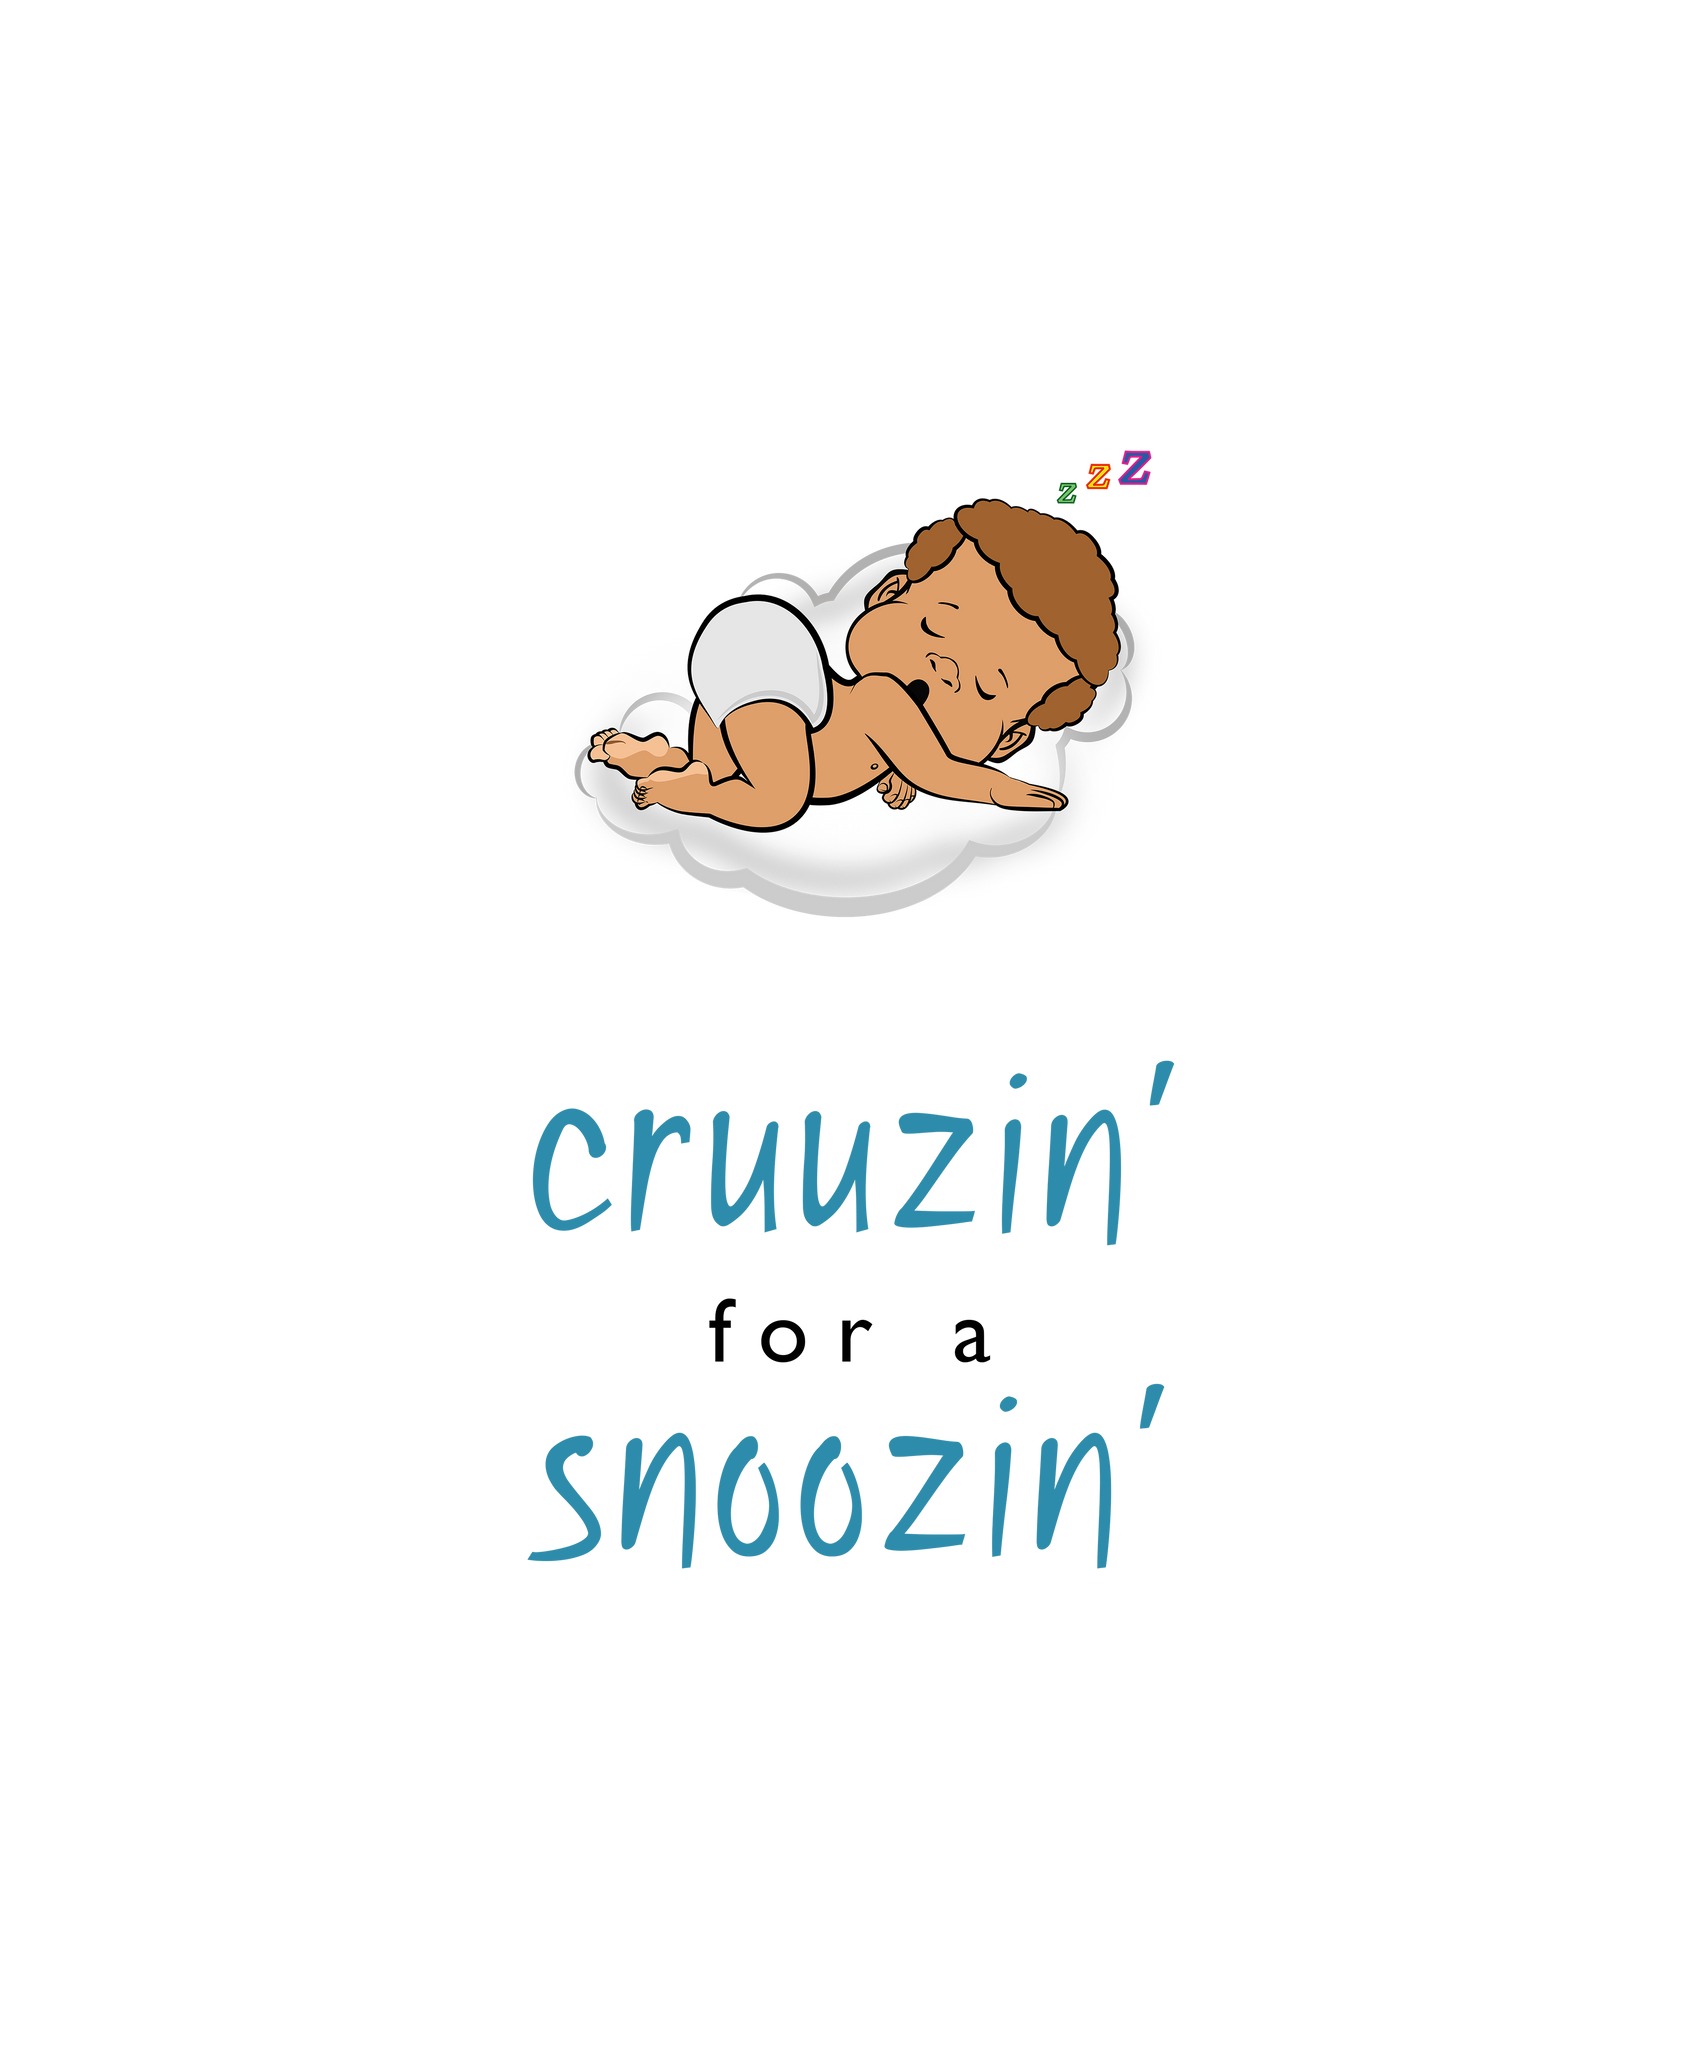 PBTZ0695_cruuzin' for a snoozin'_boy_5